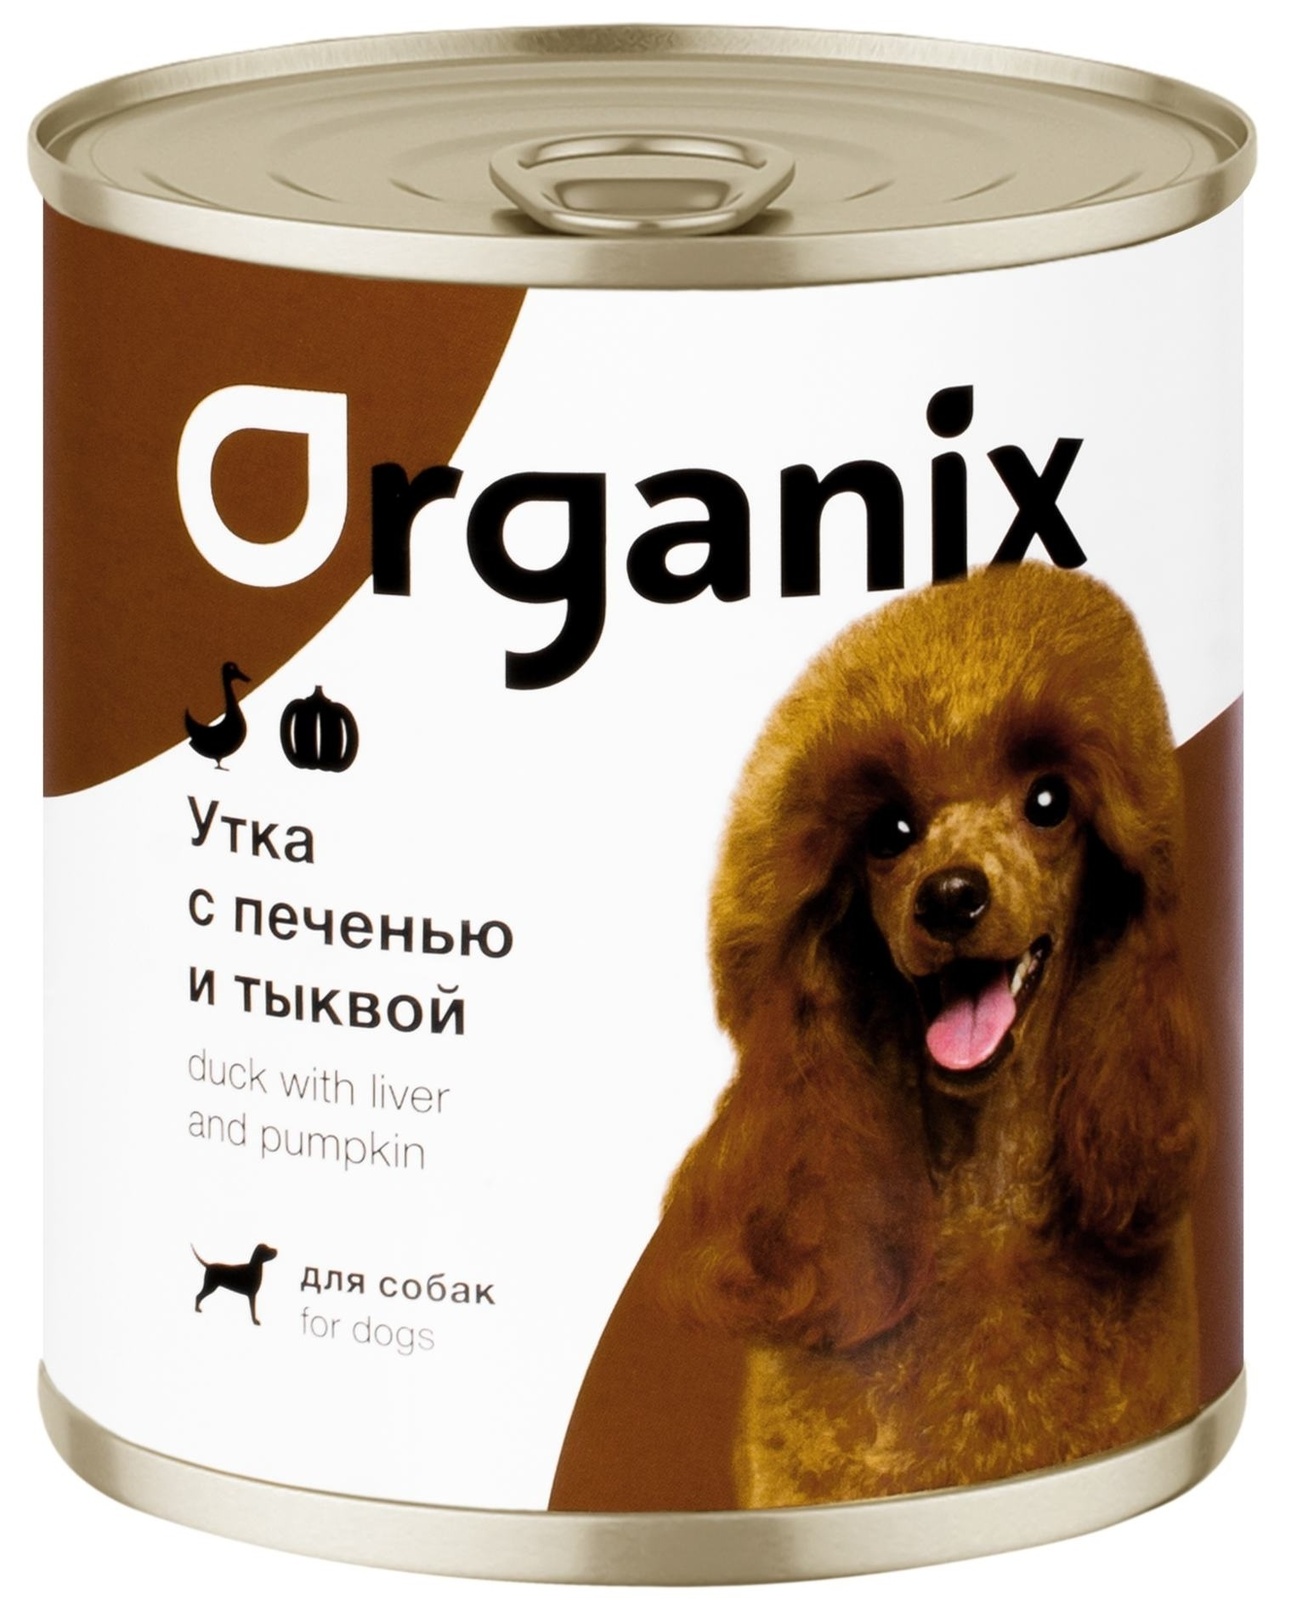 Organix консервы Organix консервы для собак Сочная утка с печенью и тыквой (750 г) organix консервы organix консервы для собак кролик с зеленым горошком 750 г